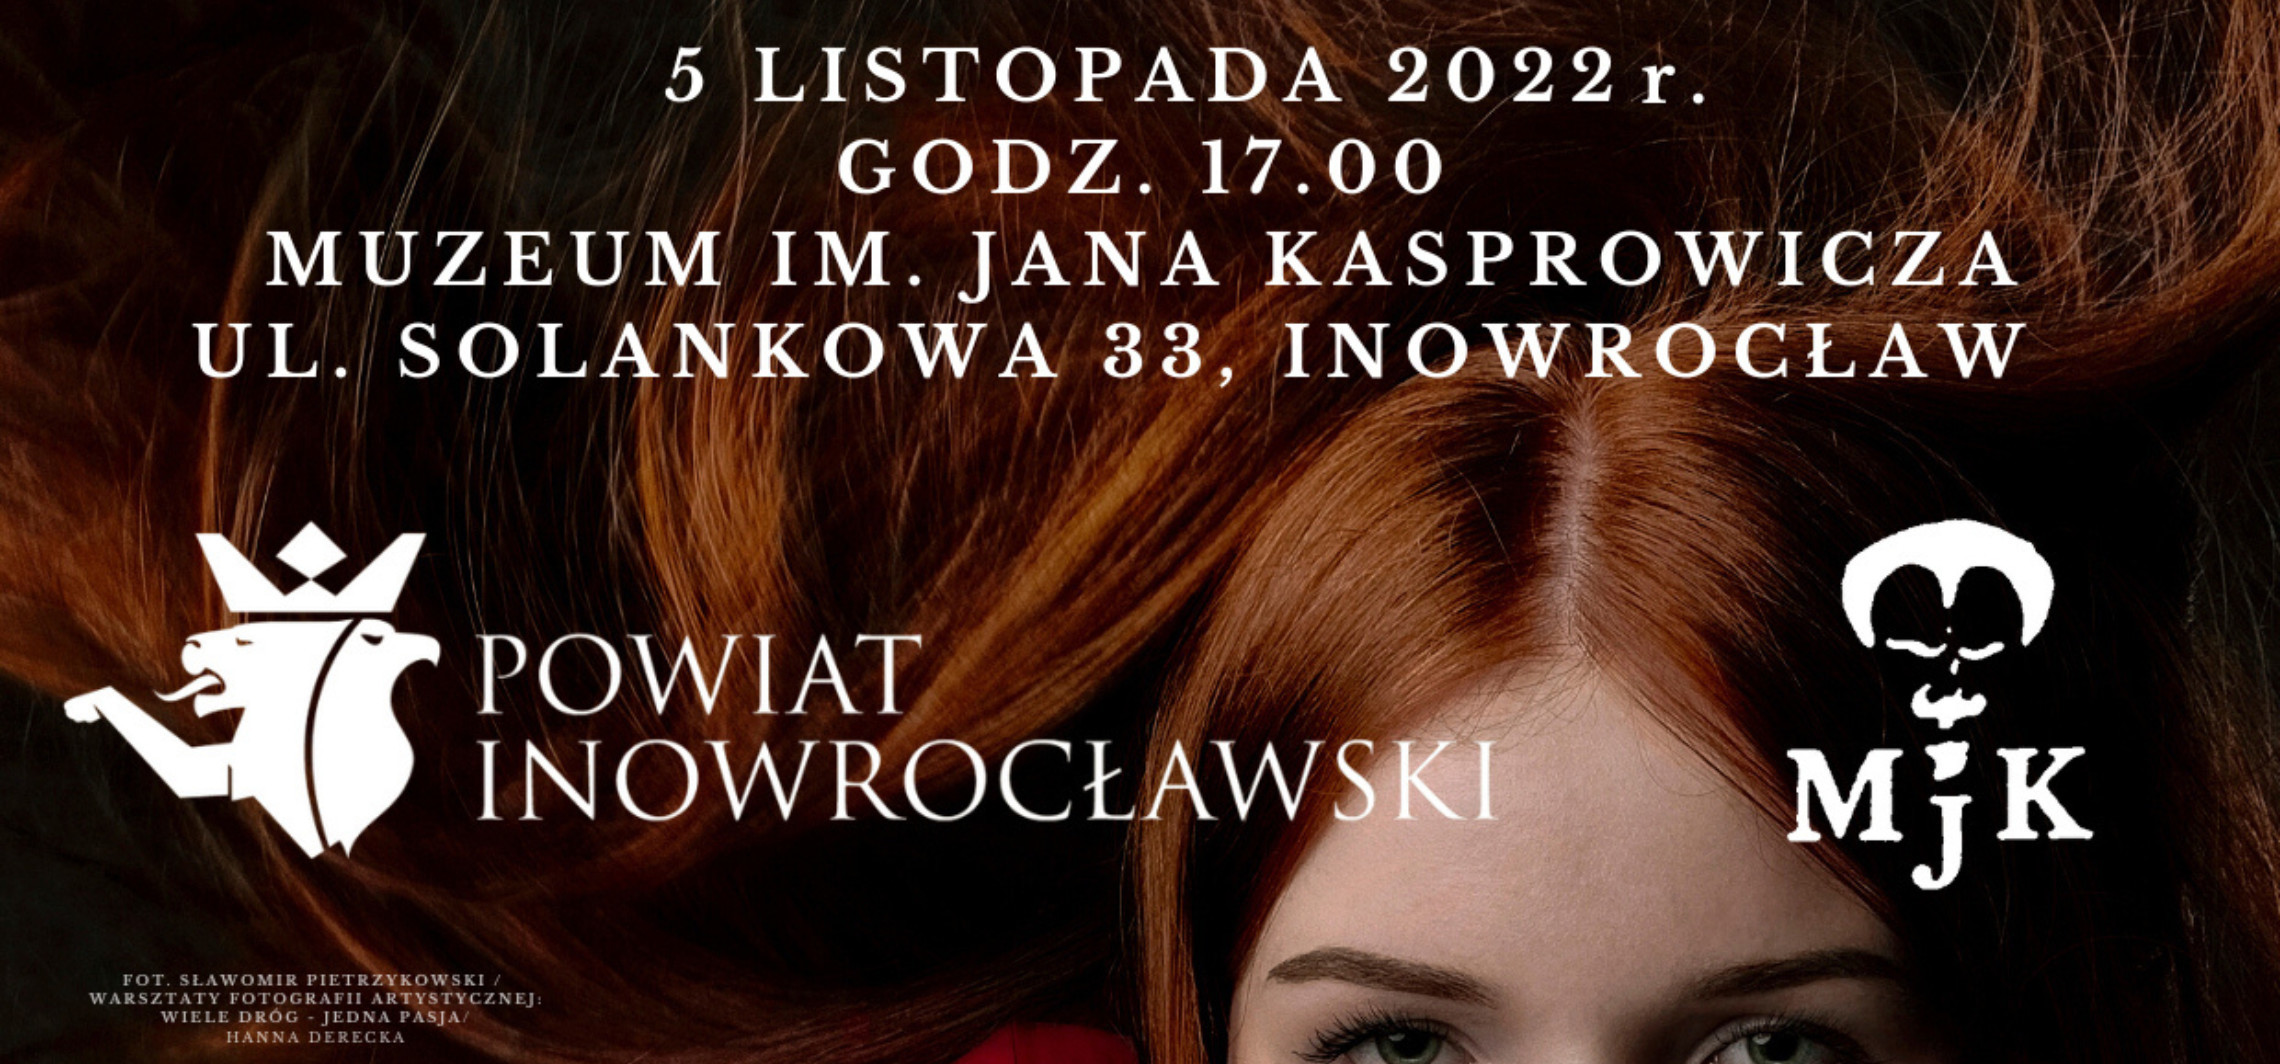 Inowrocław - W muzeum zobaczymy fotografie portretowe i nie tylko